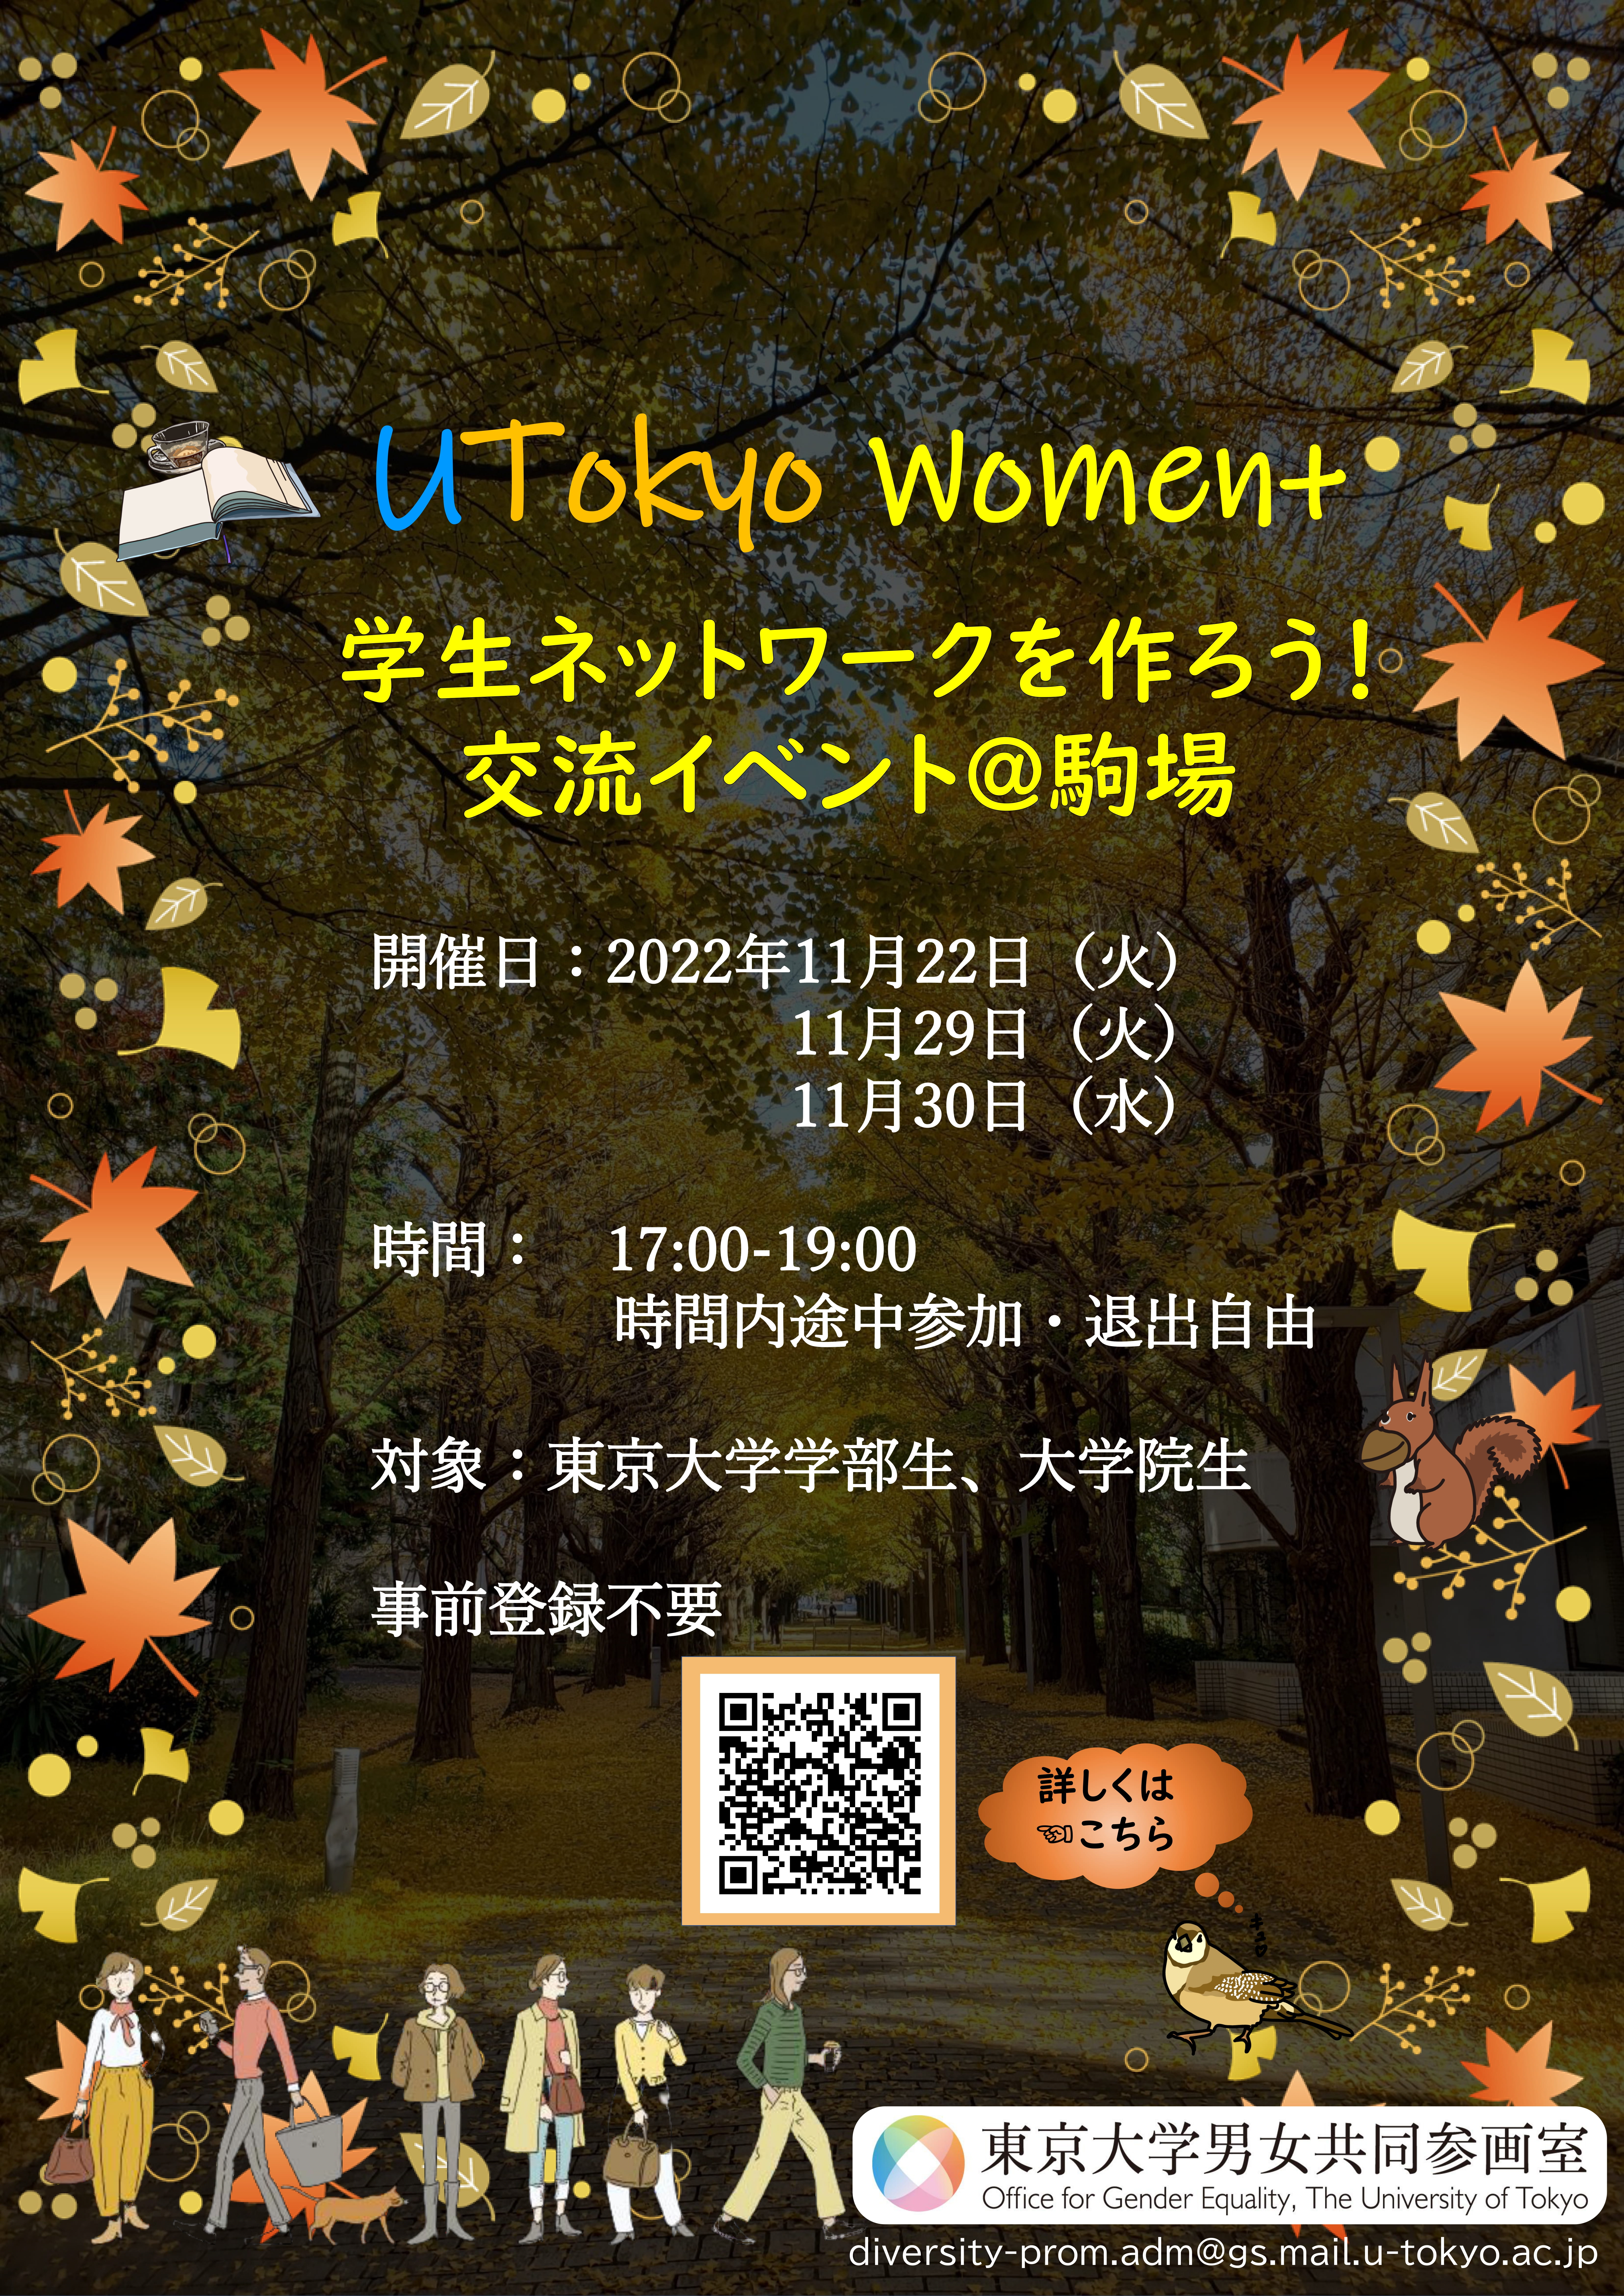 UTokyo Women+